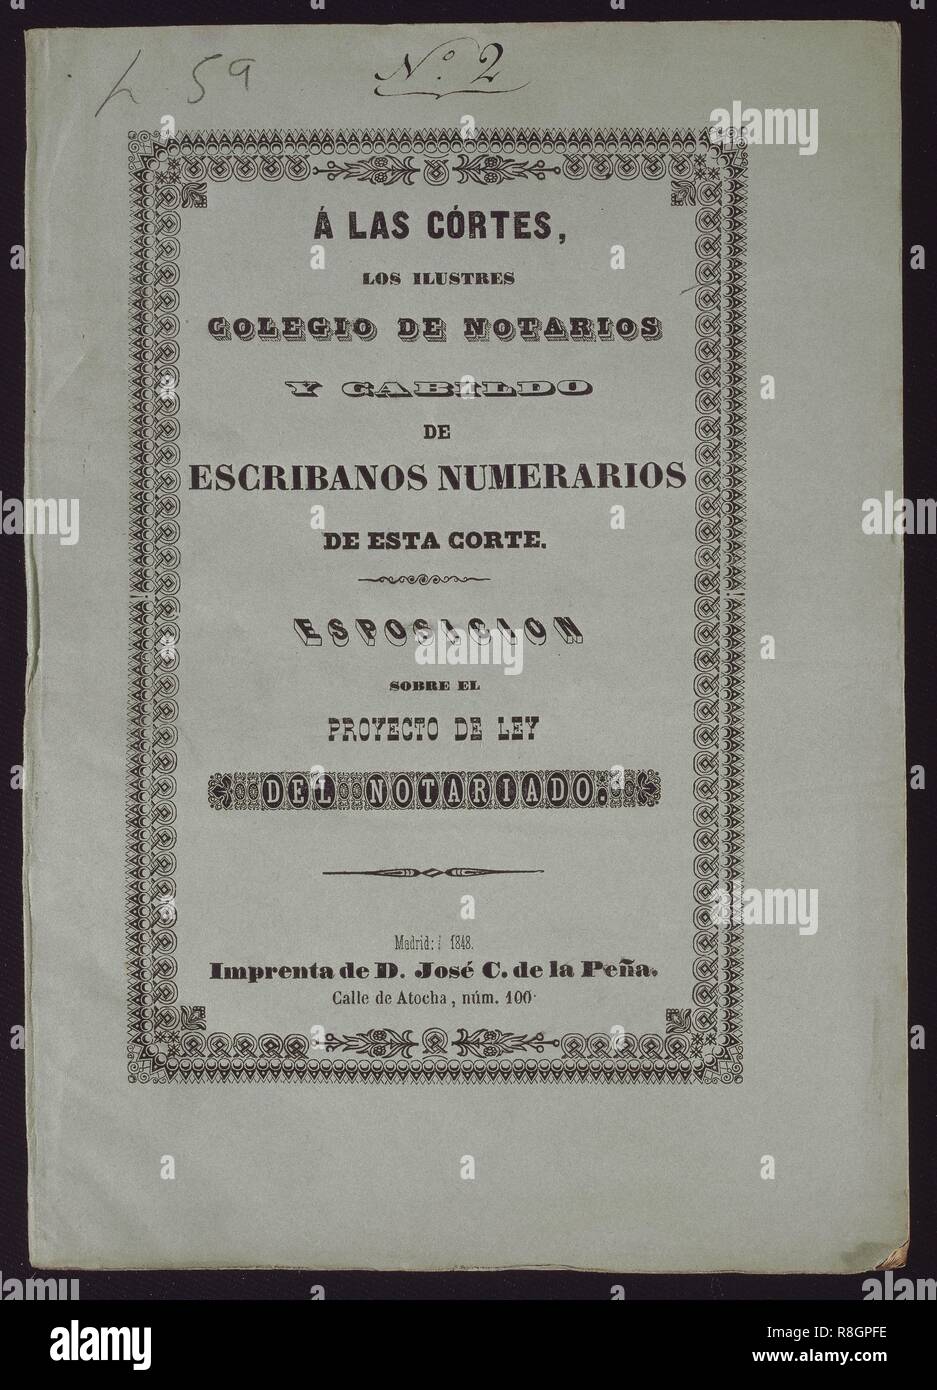 EXPOSICION SOBRE EL PROYECTO DE LEY DEL NOTARIADO - MADRID 1848. Location: CONGRESO DE LOS DIPUTADOS-BIBLIOTECA. MADRID. SPAIN. Stock Photo